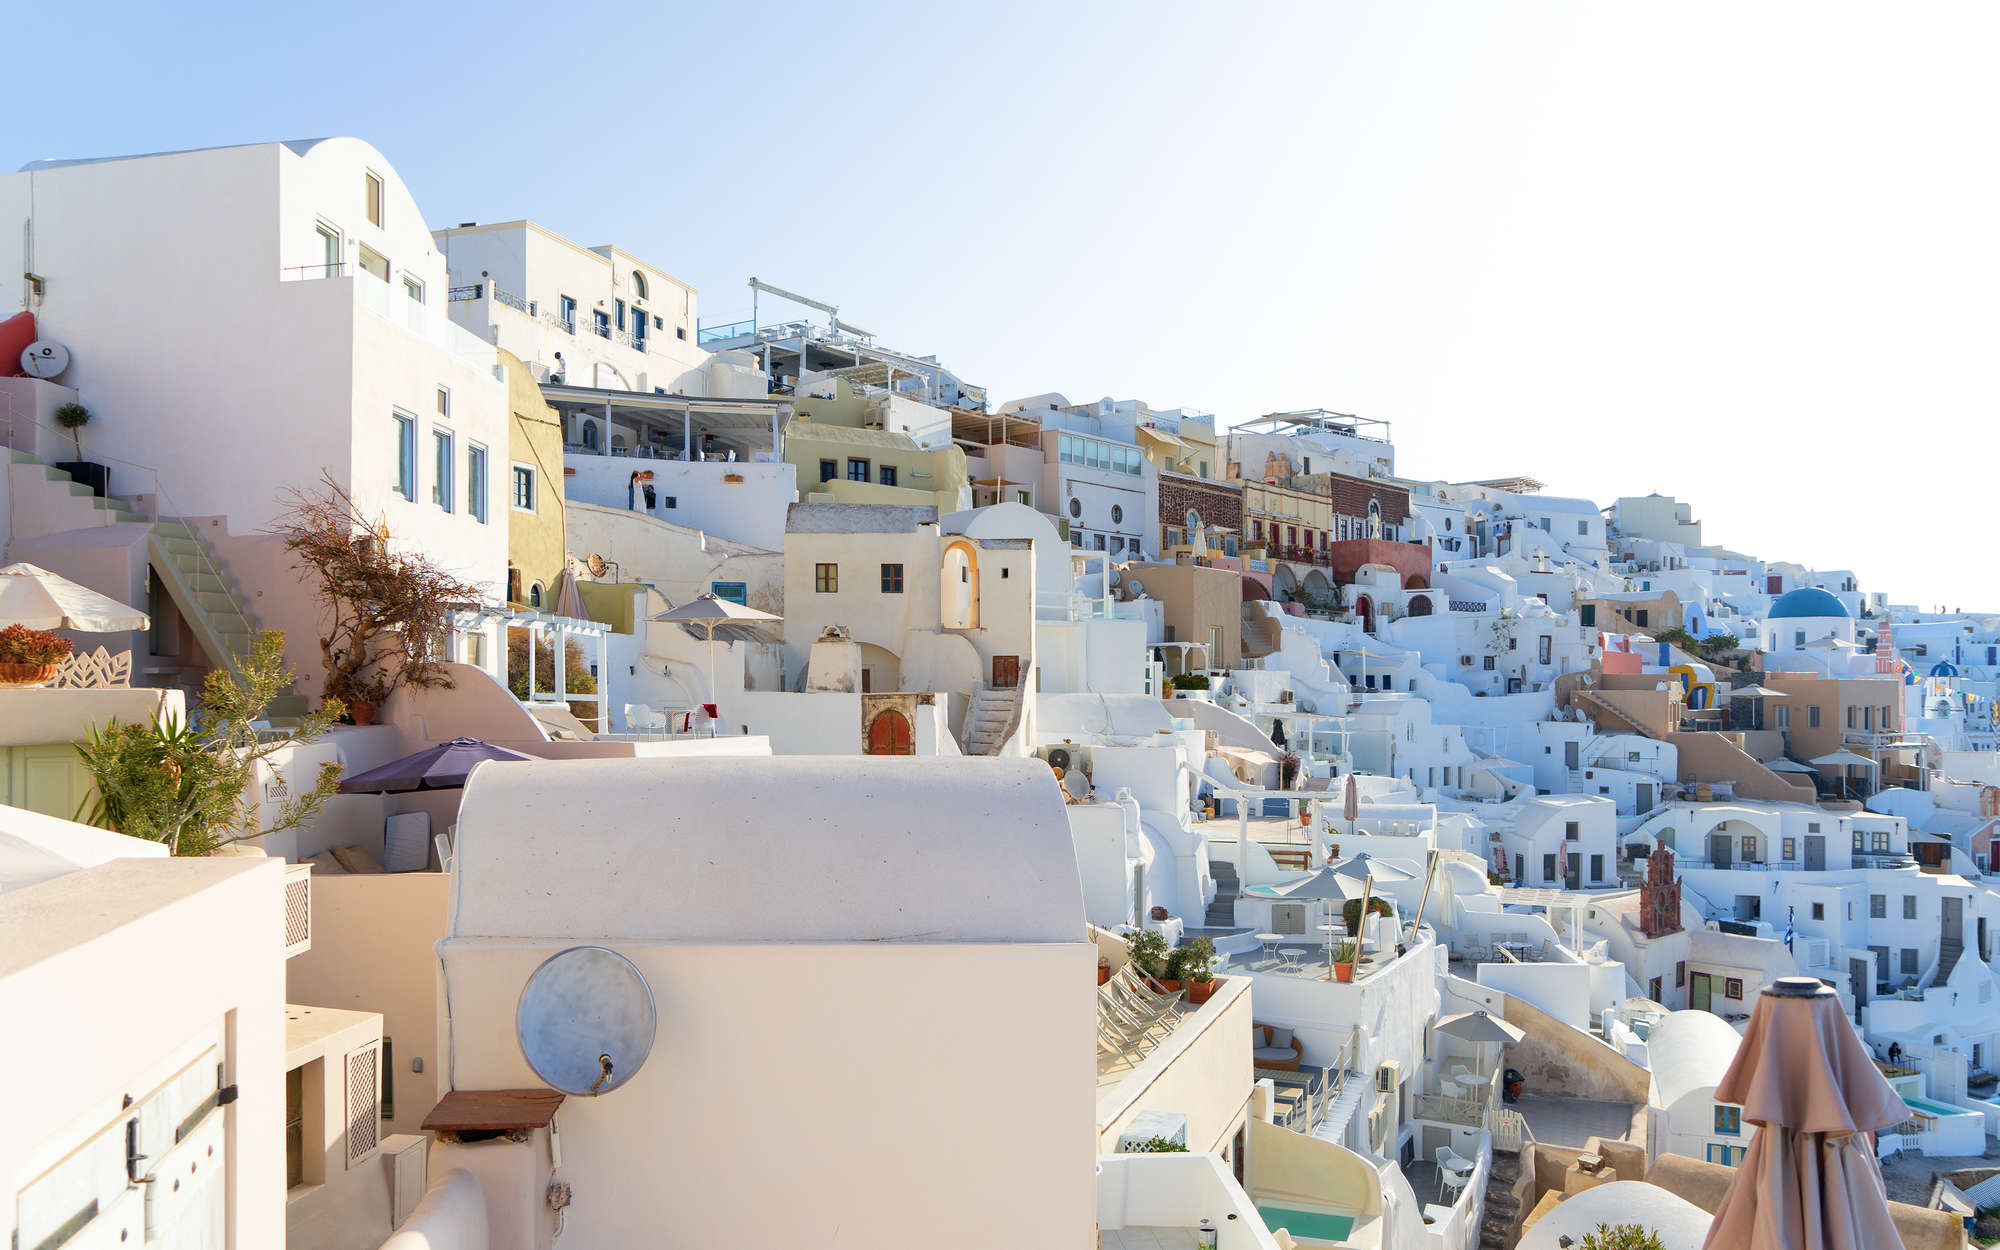             Fototapete Santorini in der Mittagssonne – Mattes Glattvlies
        